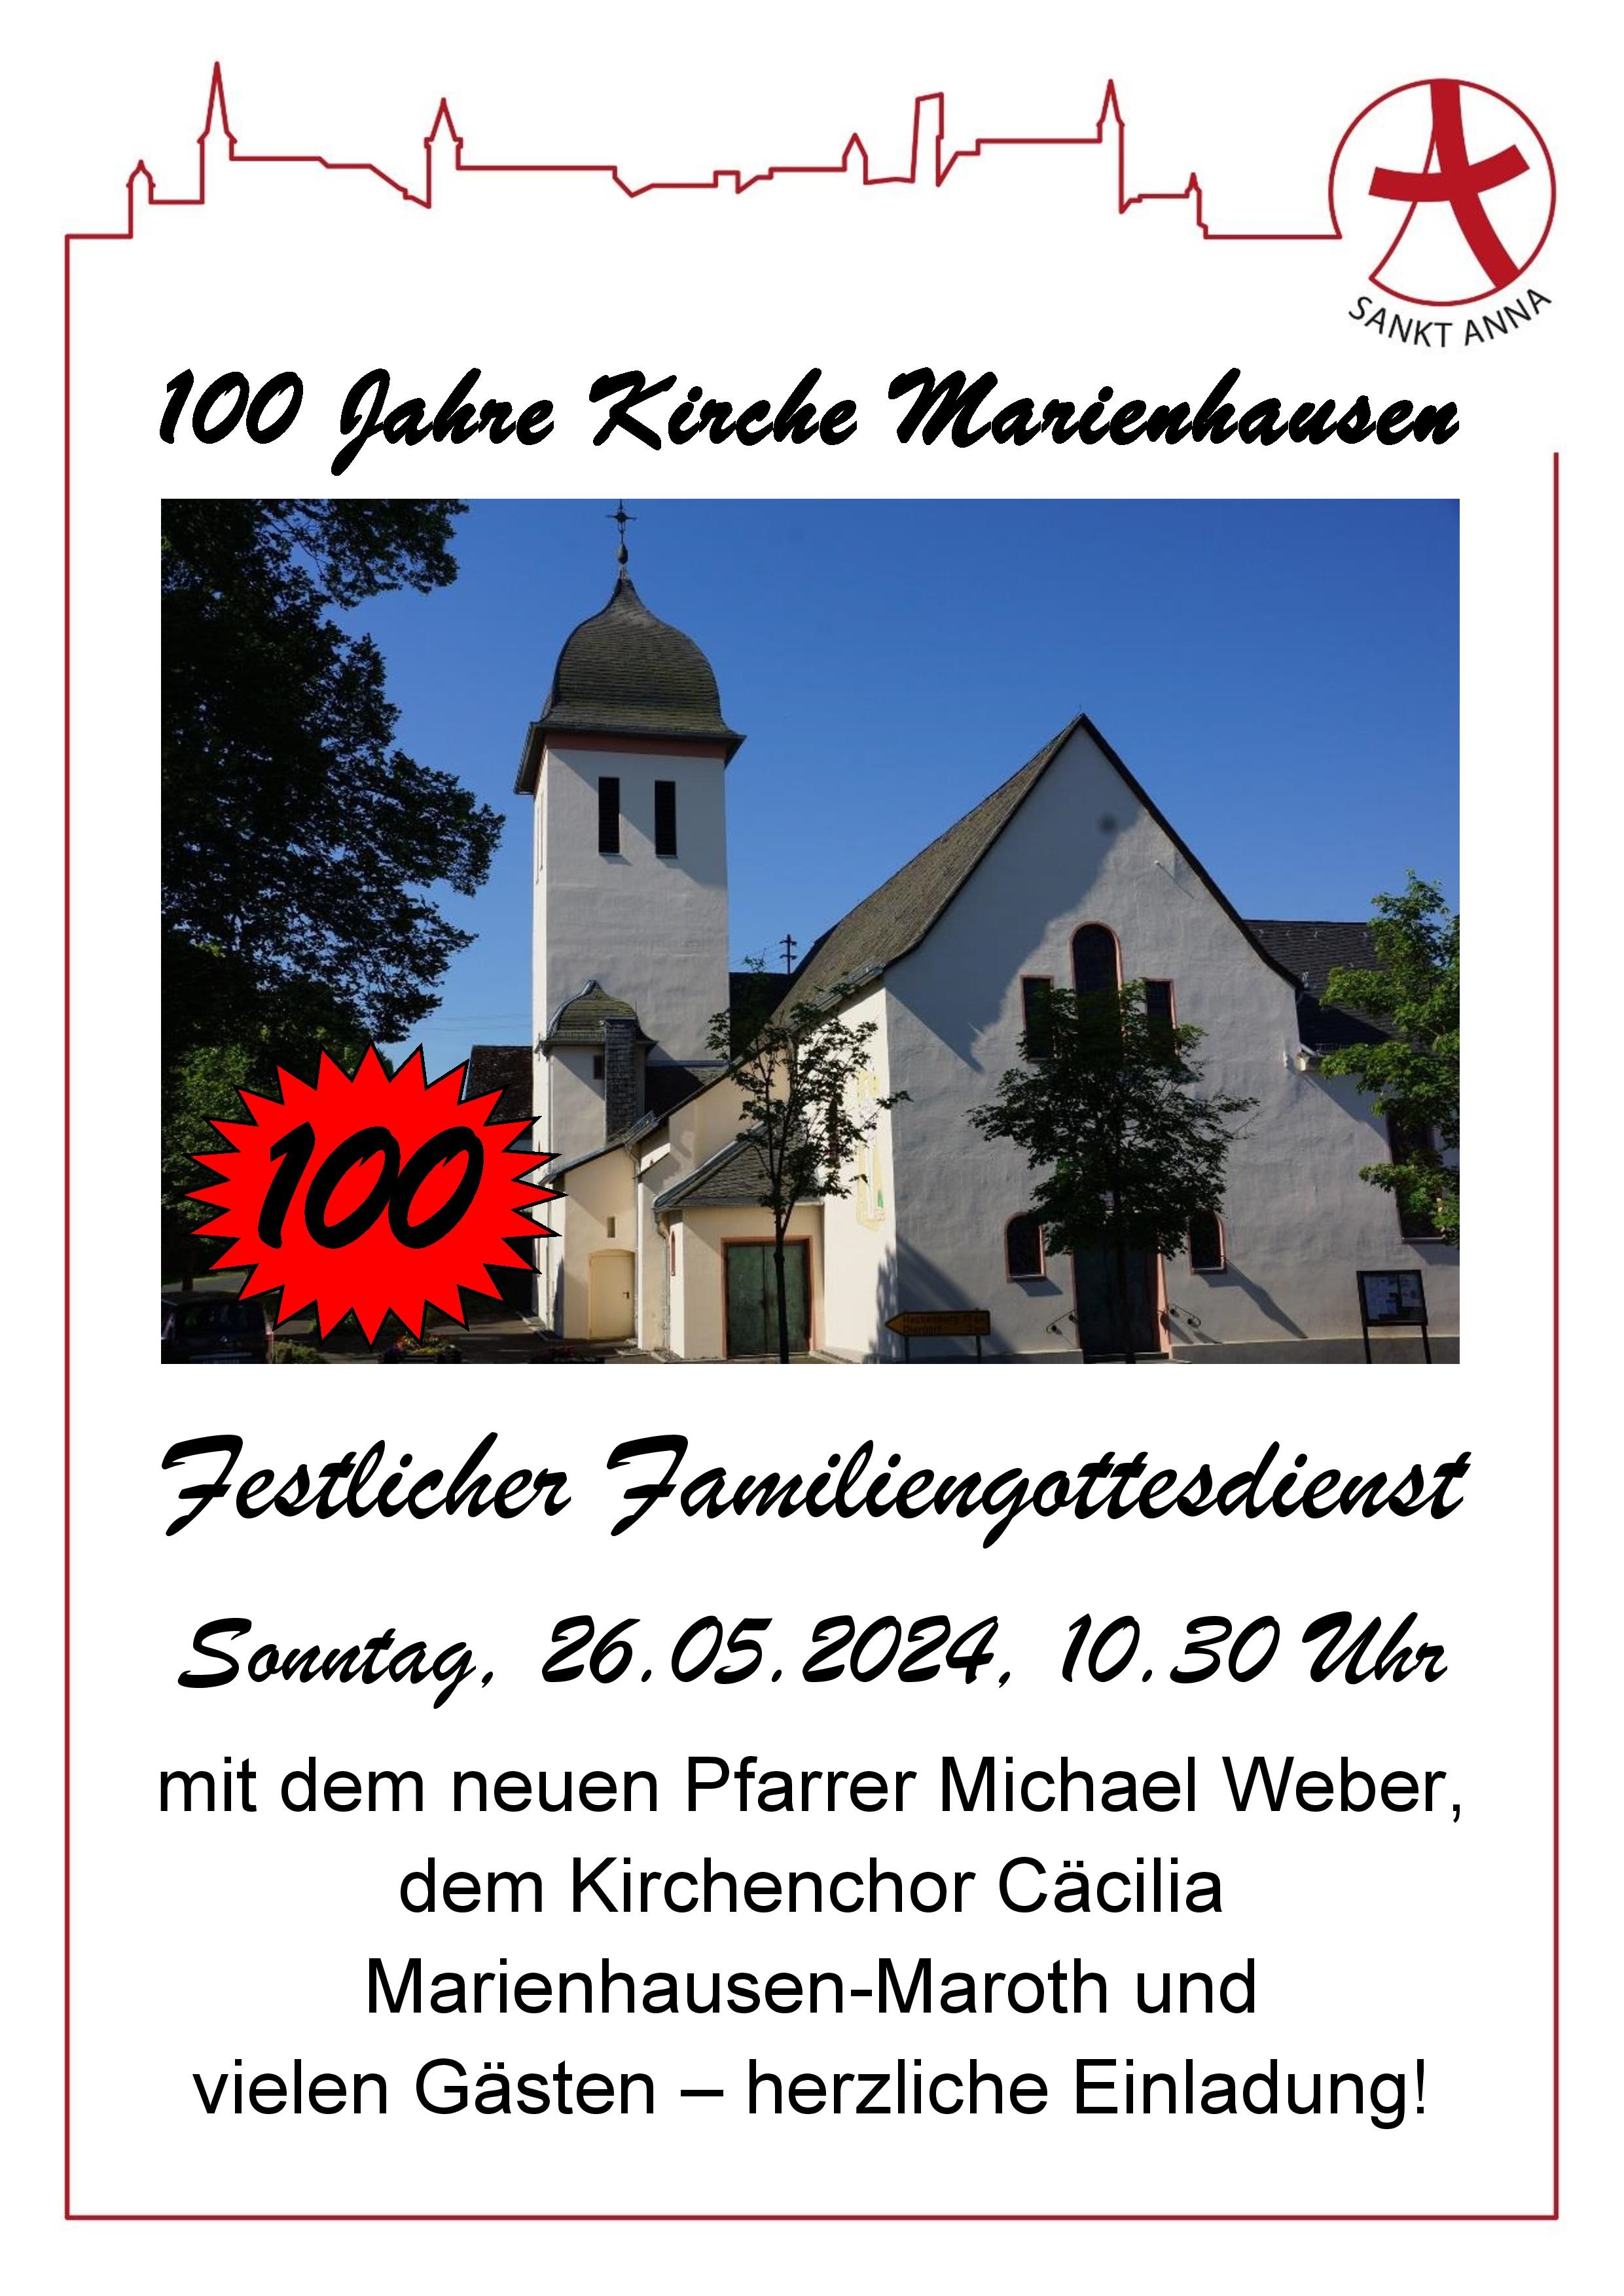 Fest- und Familiengottesdienst zum 100jährigen in Marienhausen am 26.05.24 um 10.30 Uhr